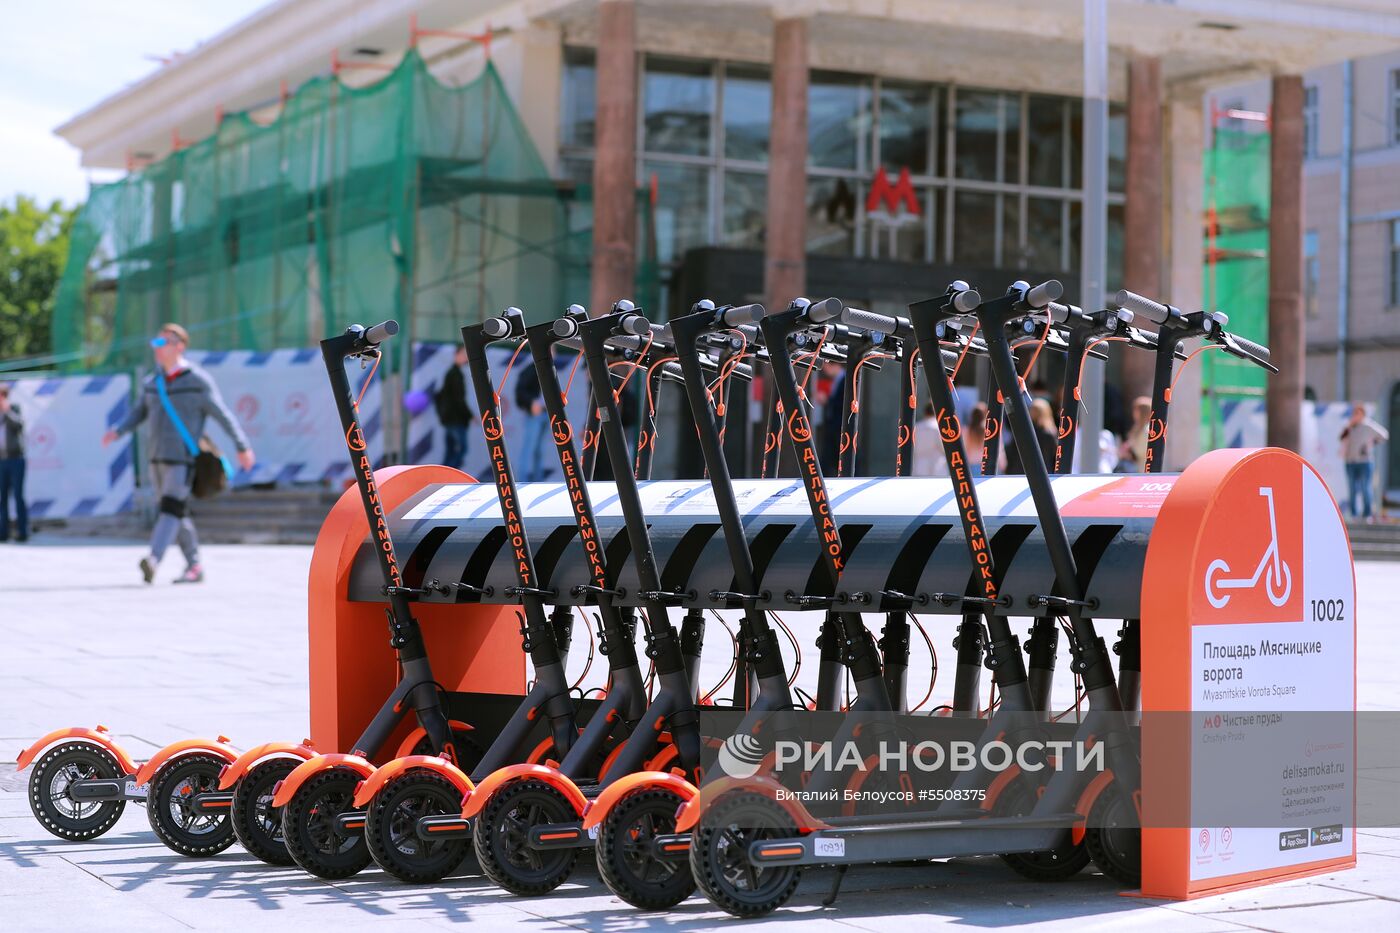 Пункты проката электросамокатов открылись в Москве